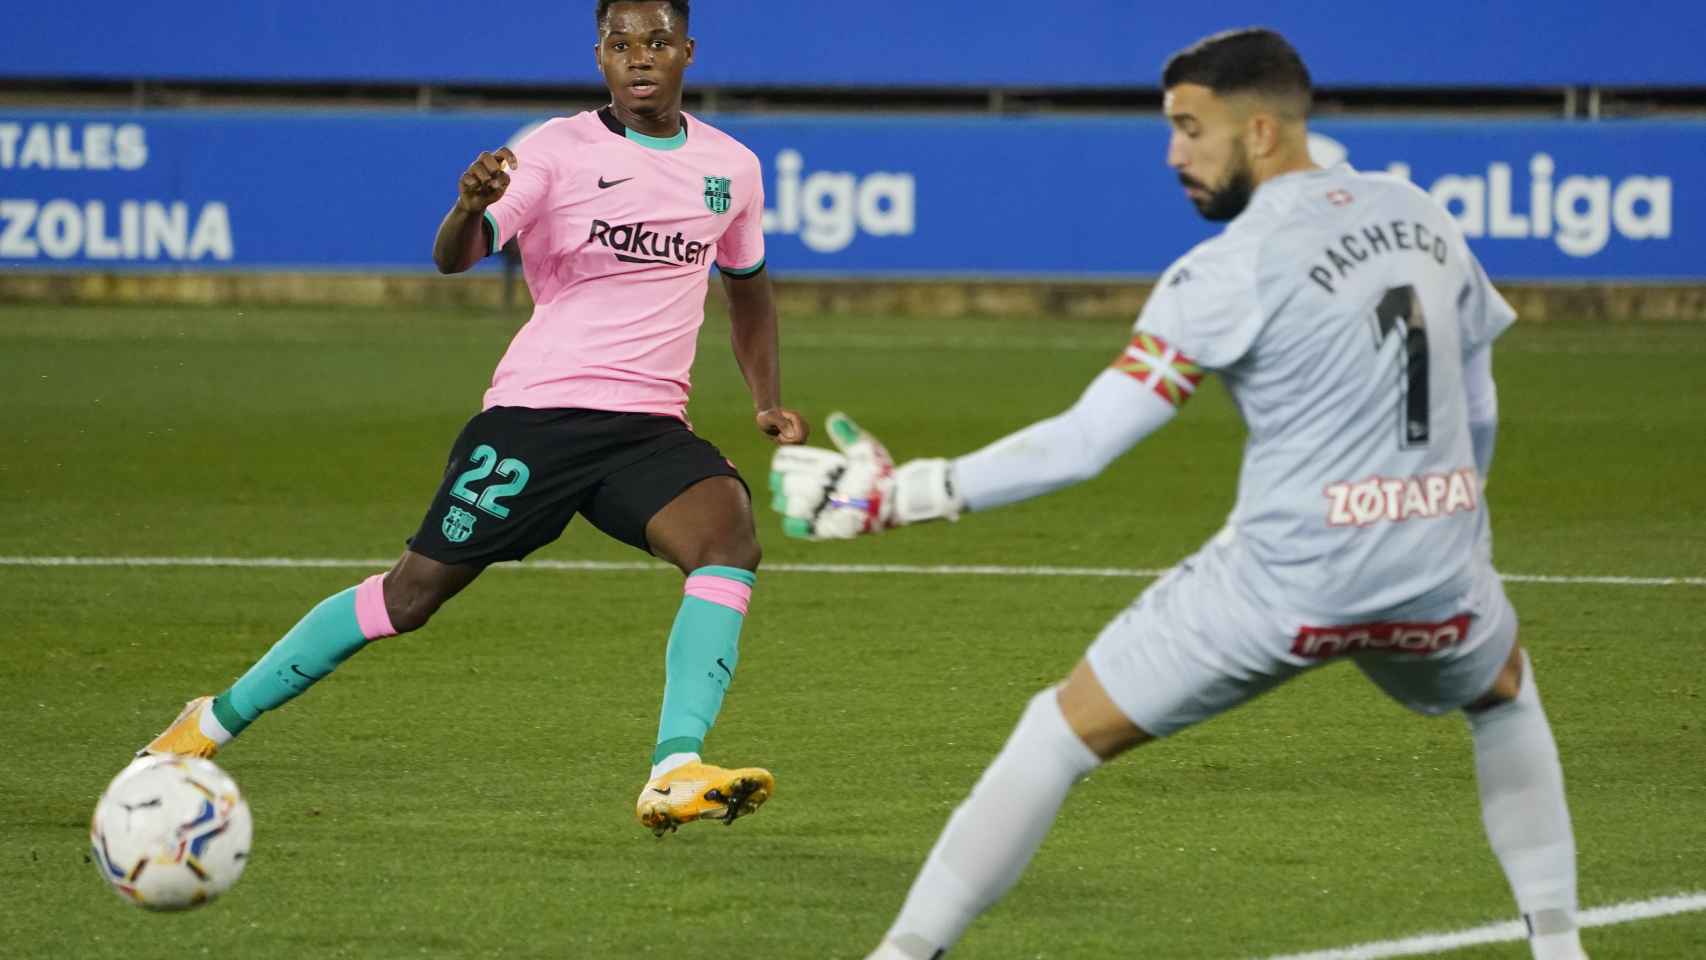 Ansu Fati falla ante Pacheco, en el Alavés - Barcelona de La Liga